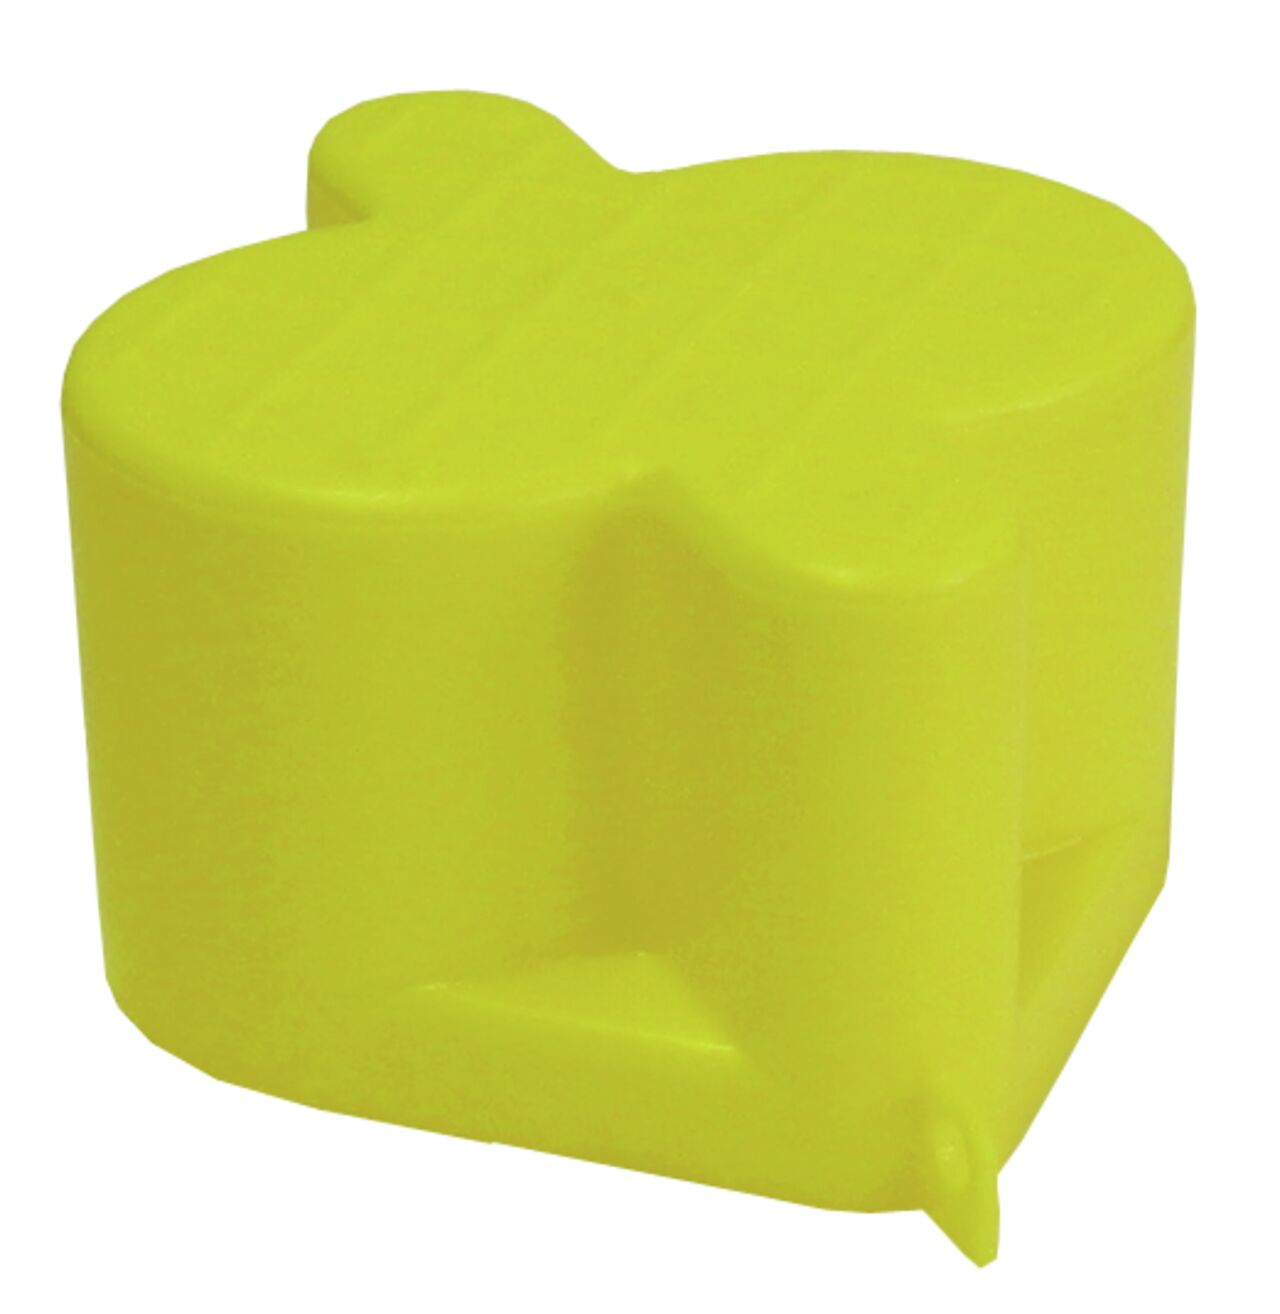 Beskytteleseskappe i gul plast for S-0900 brannventil 1